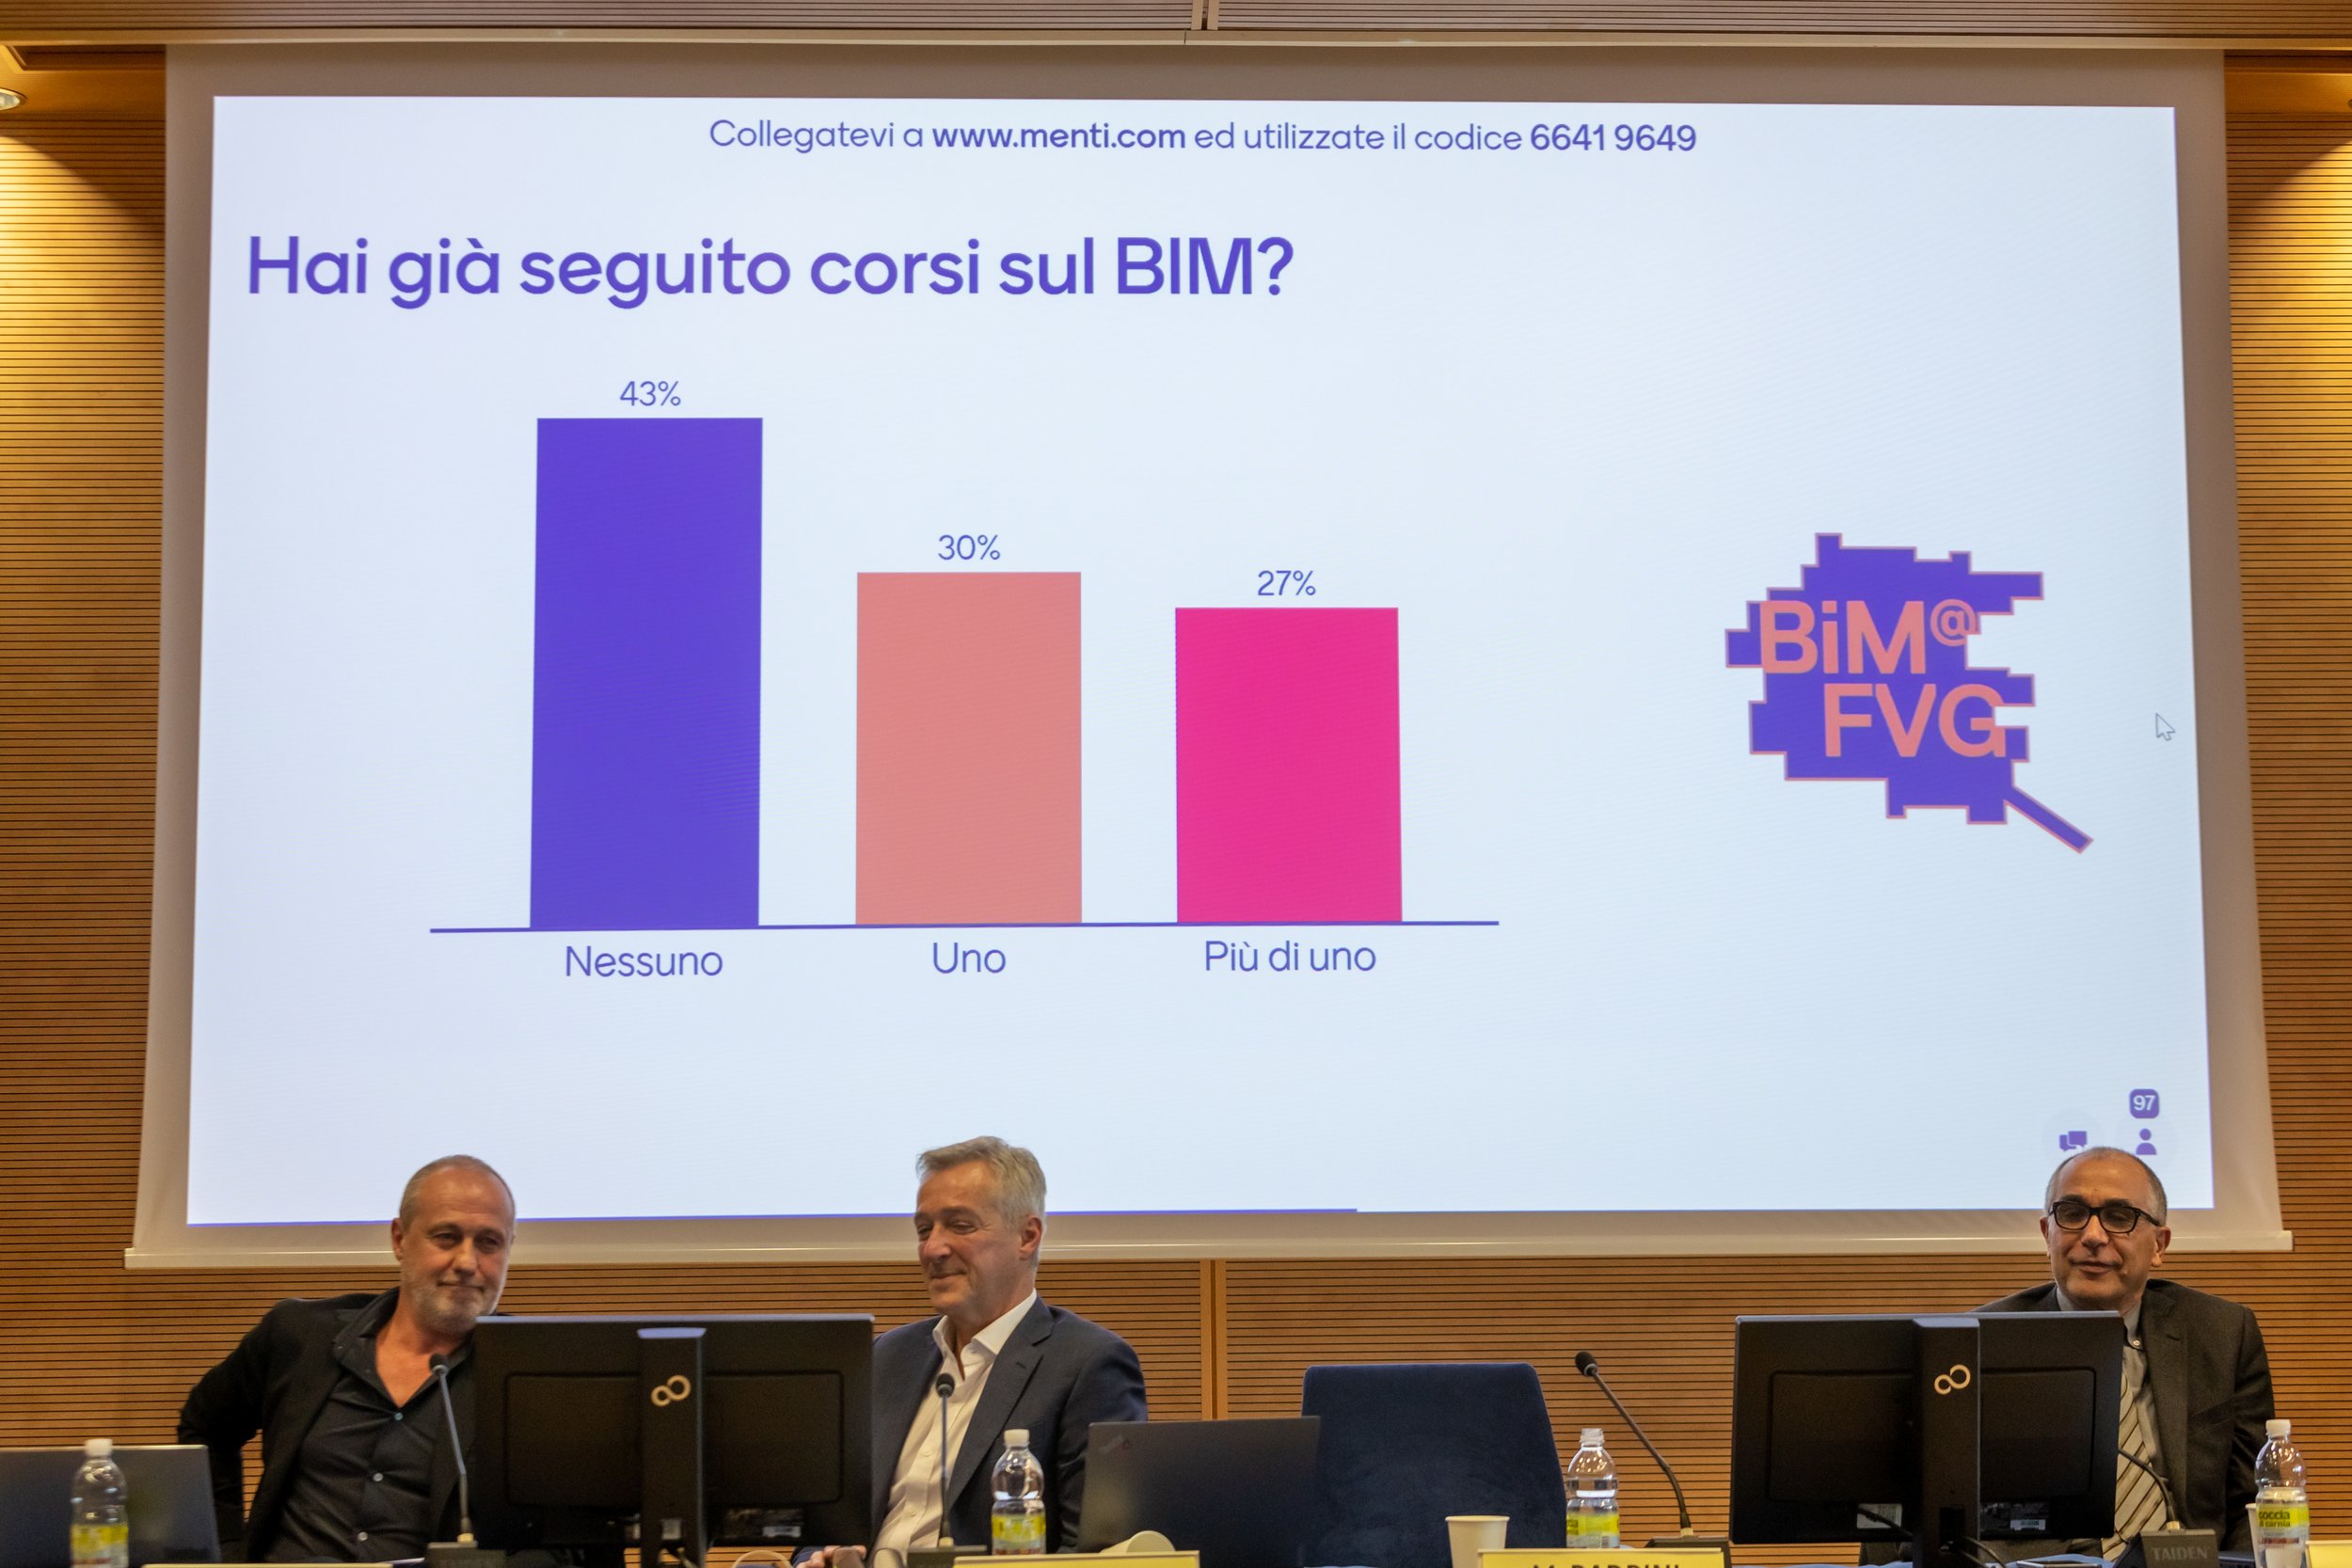  BIM@FVG seminar | Auditorium Comelli, Palazzo della Regione - Udine 